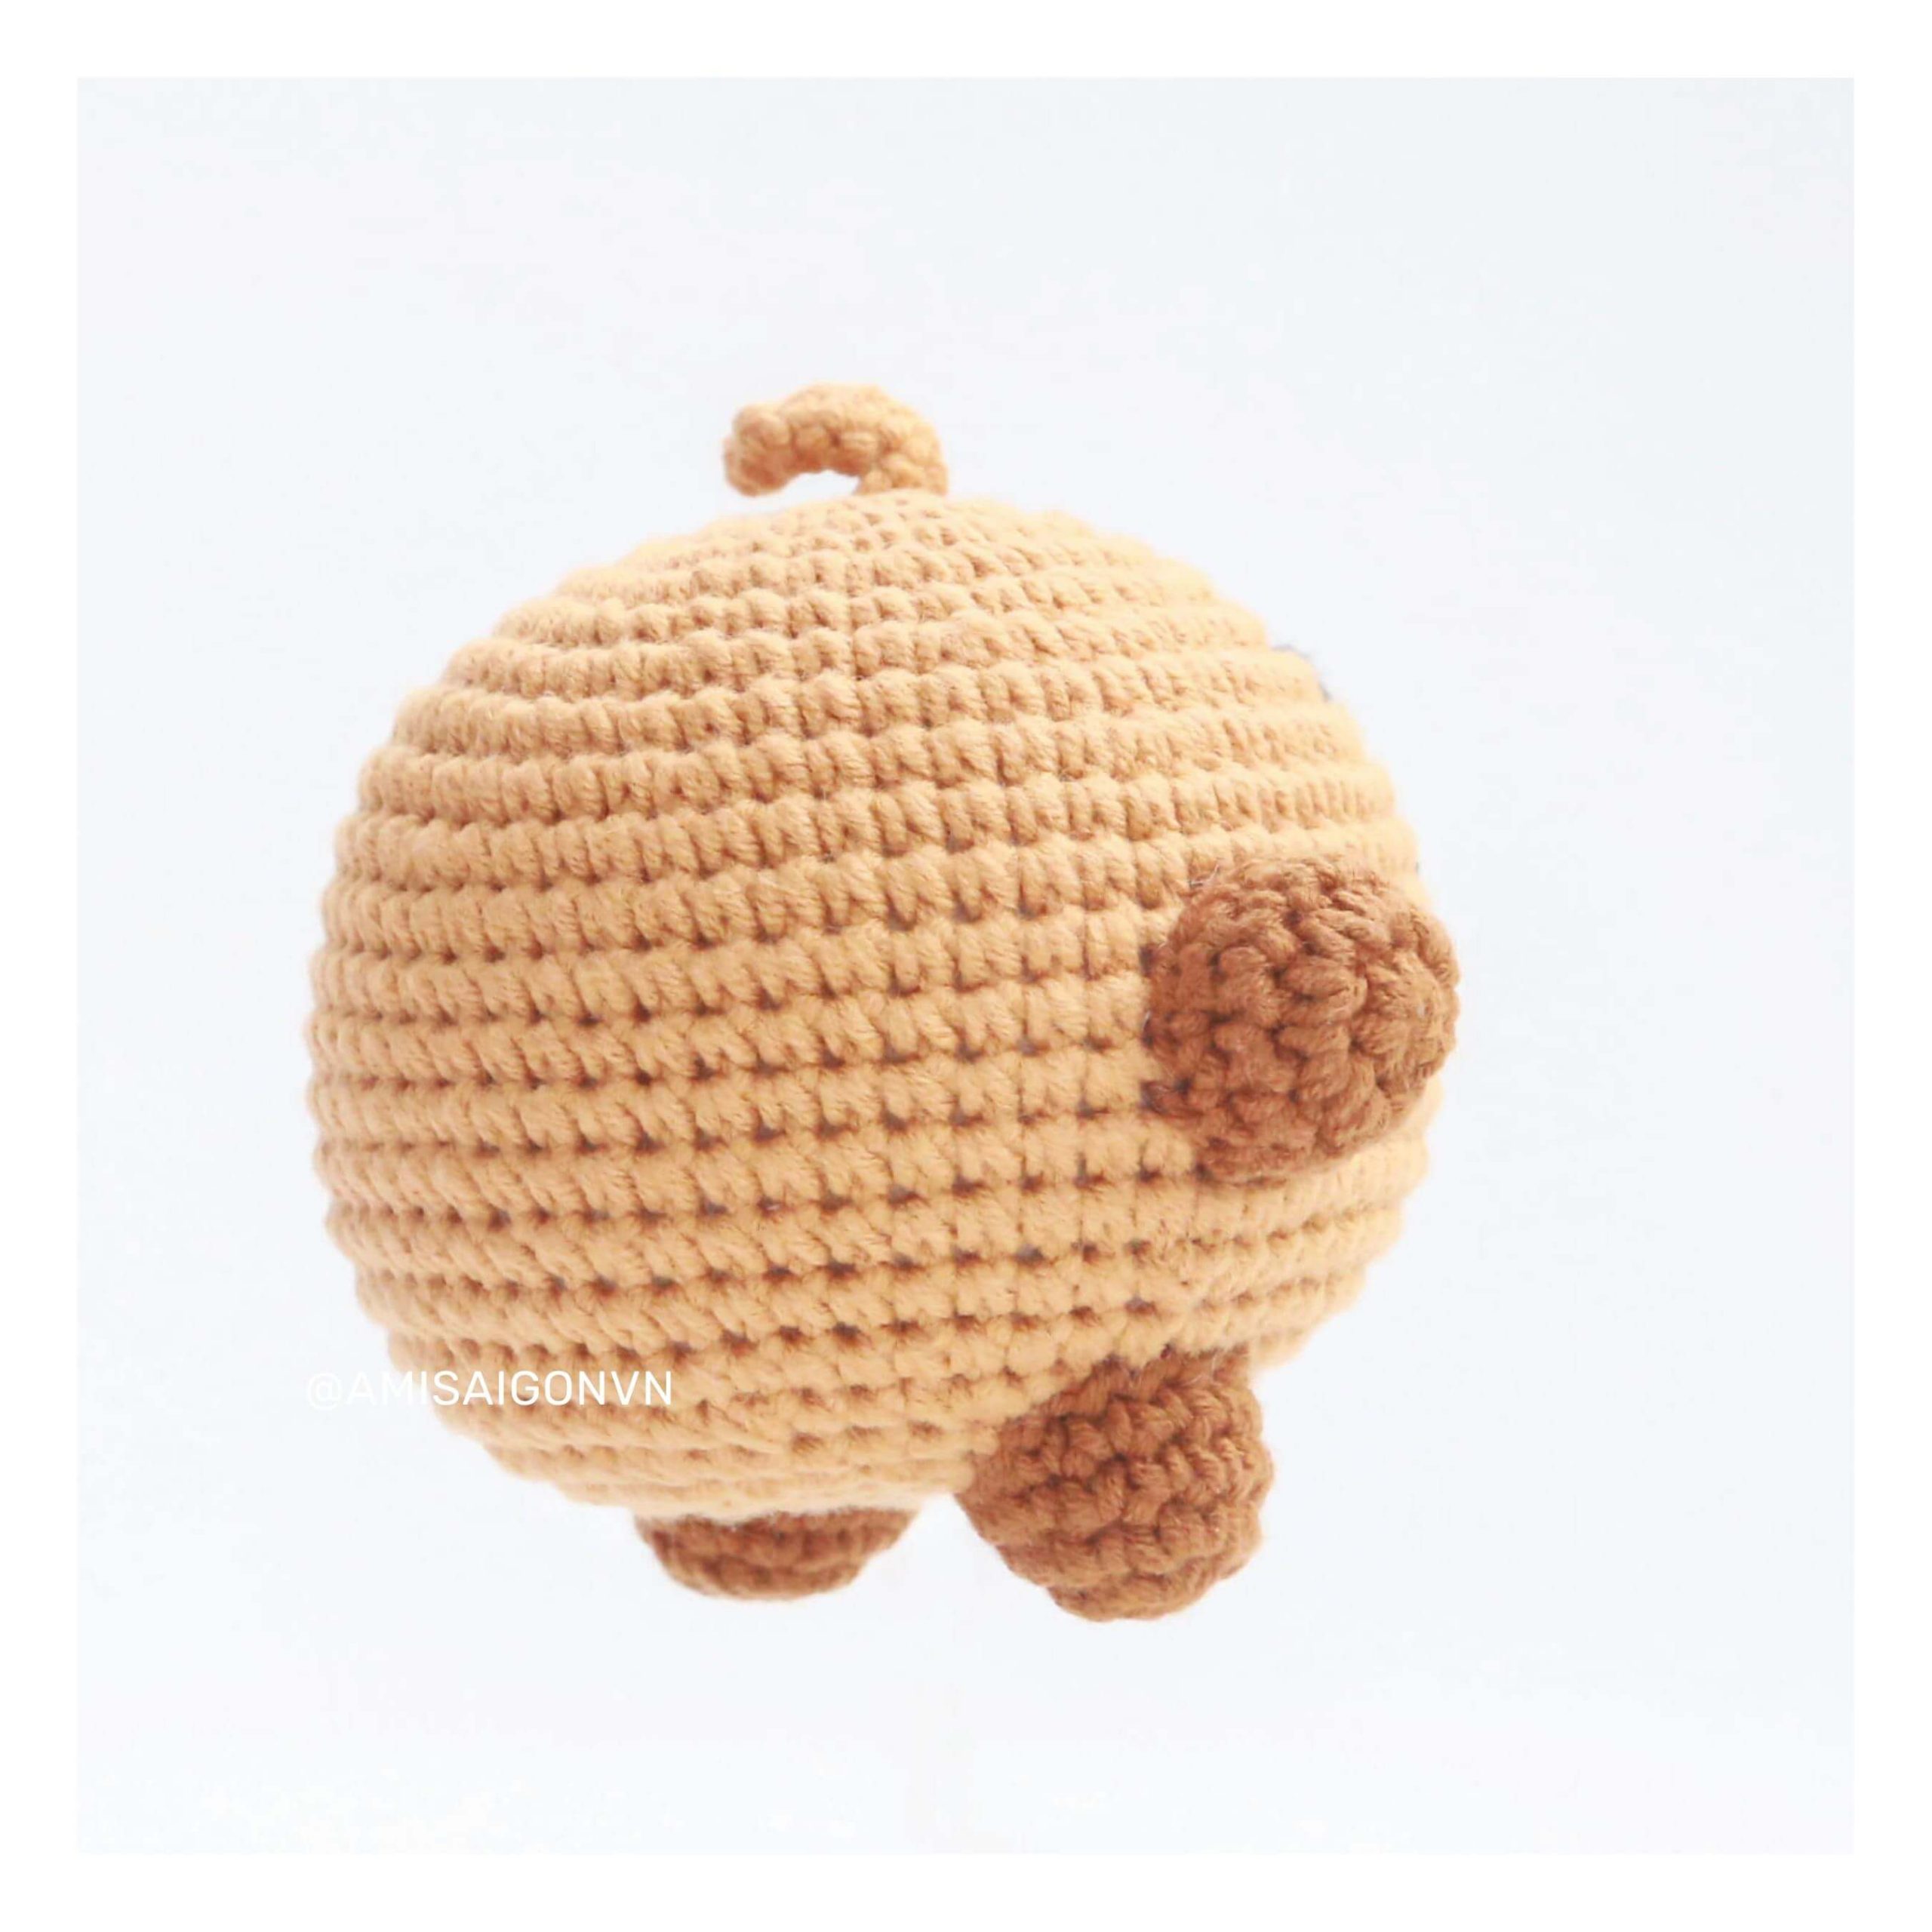 shooky-amigurumi-crochet-pattern-amisaigon-bt21-bts (6)